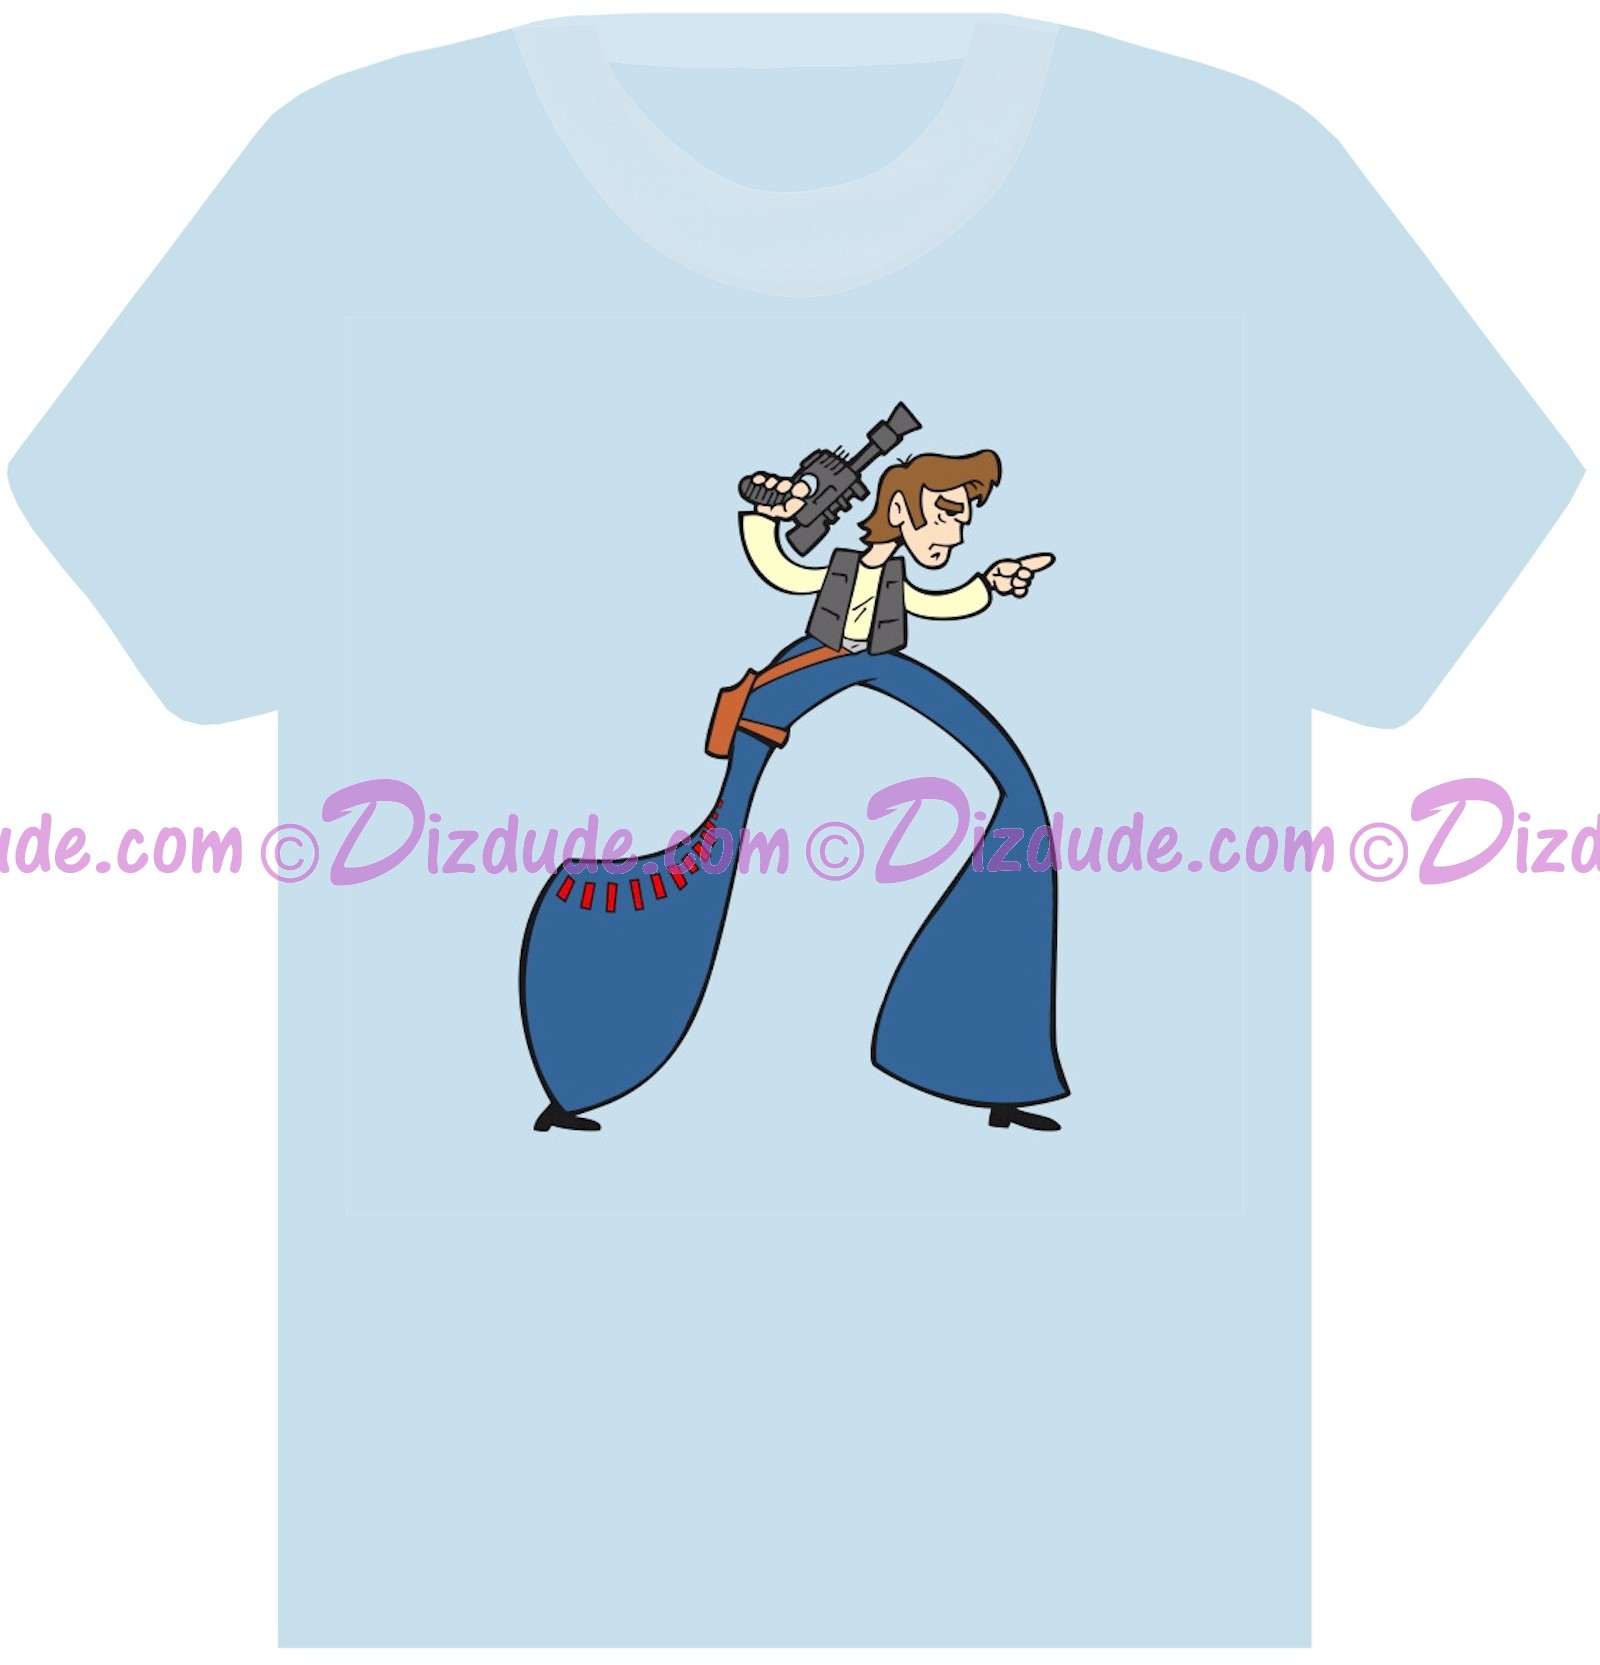 Star Wars Han Solo ~ Fantasy T-shirt (Tshirt, T shirt or Tee) © Dizdude.com